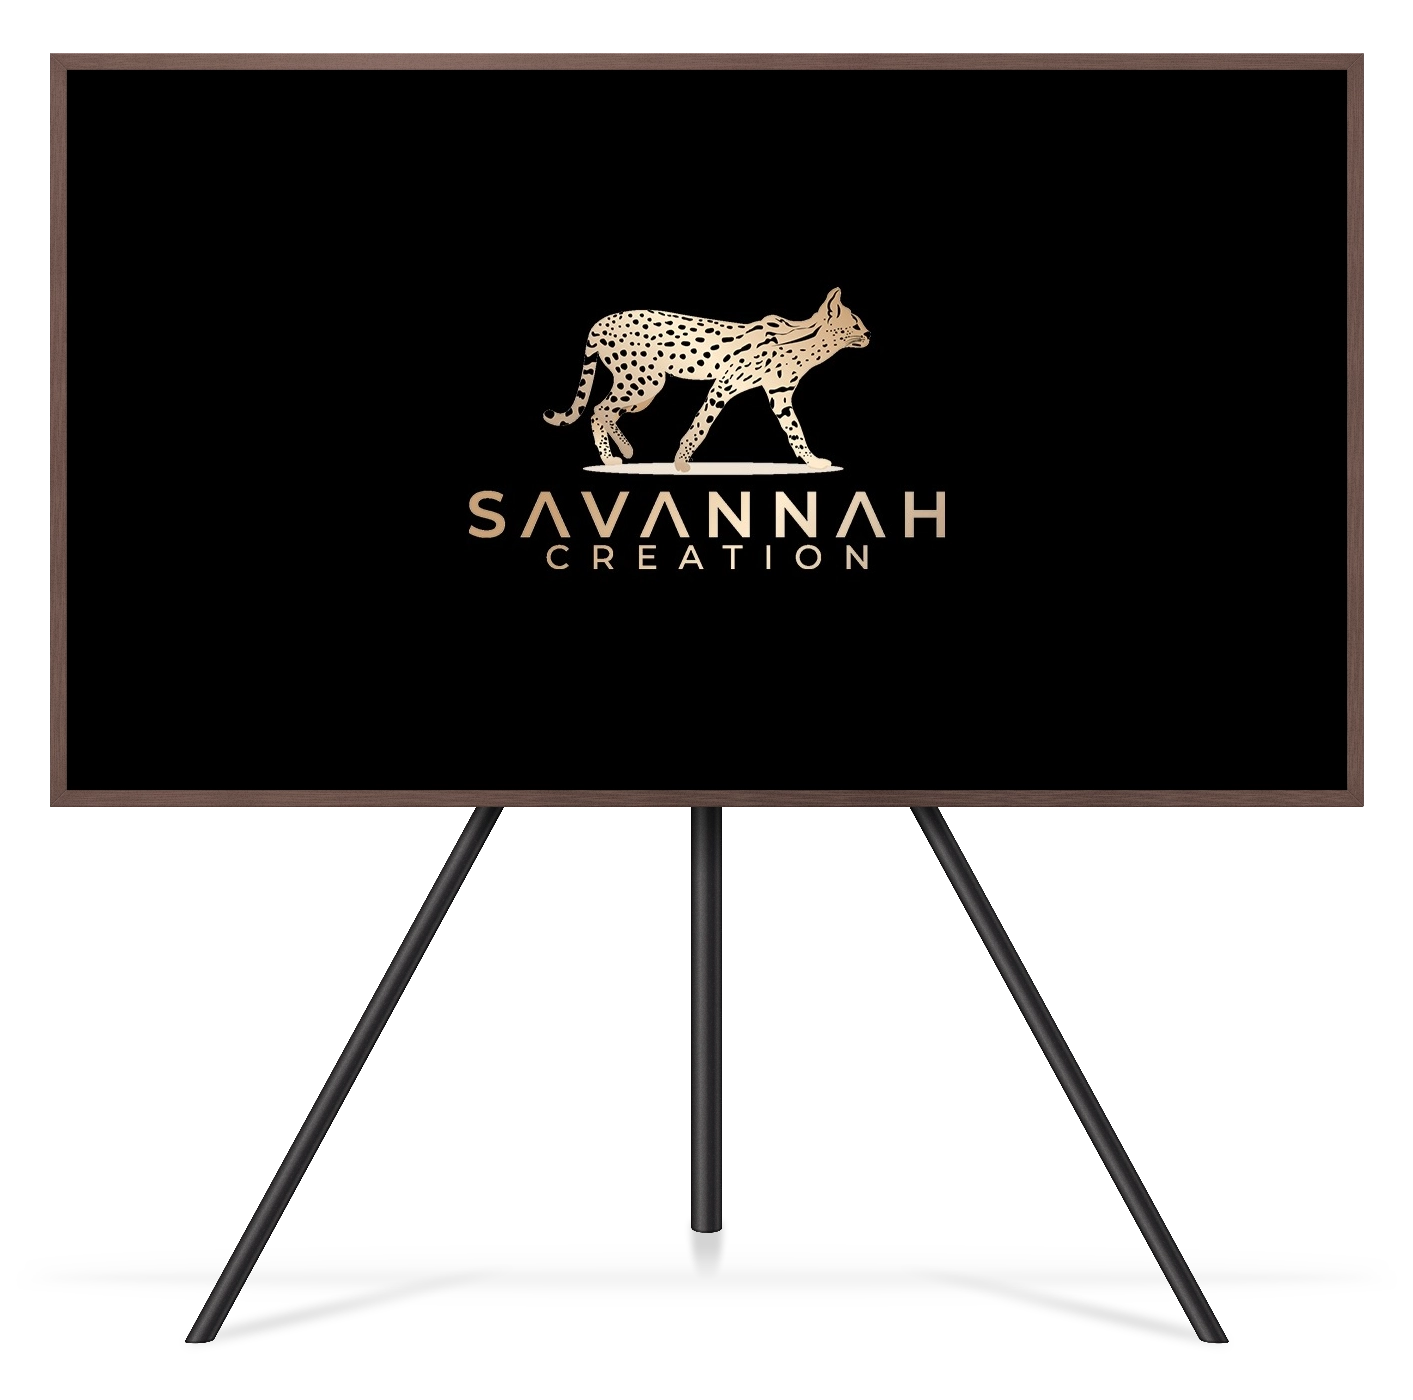 Télévision sur pied exposant une création graphique du logo savannah creation